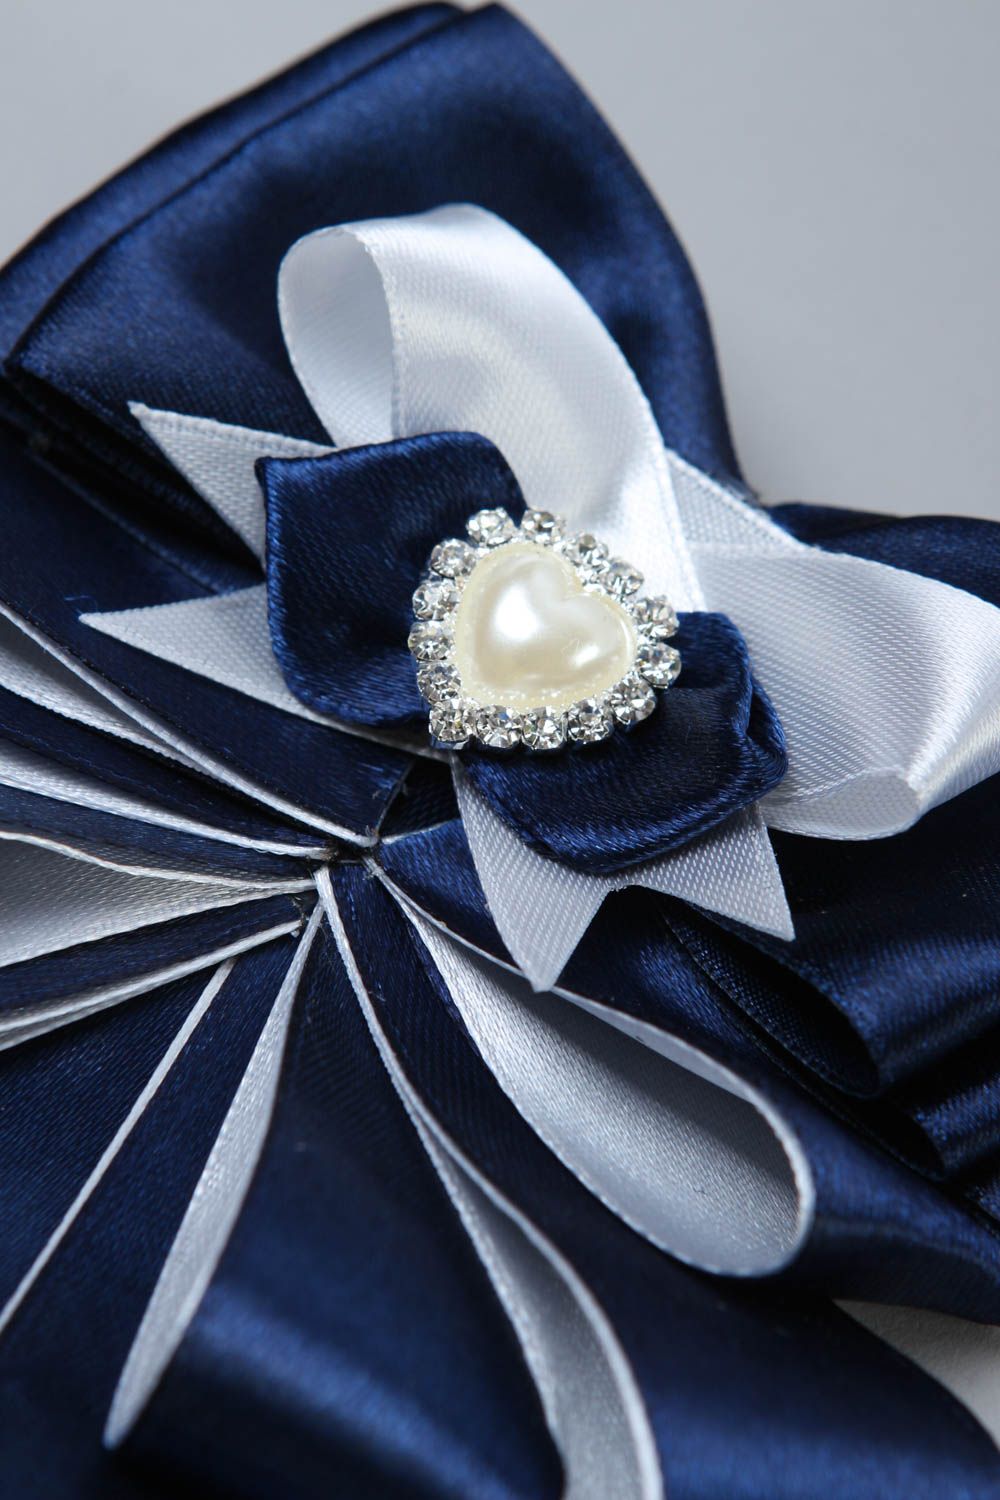 Handmade brooch designer brooch tie brooch for women gift ideas unusual brooch photo 3